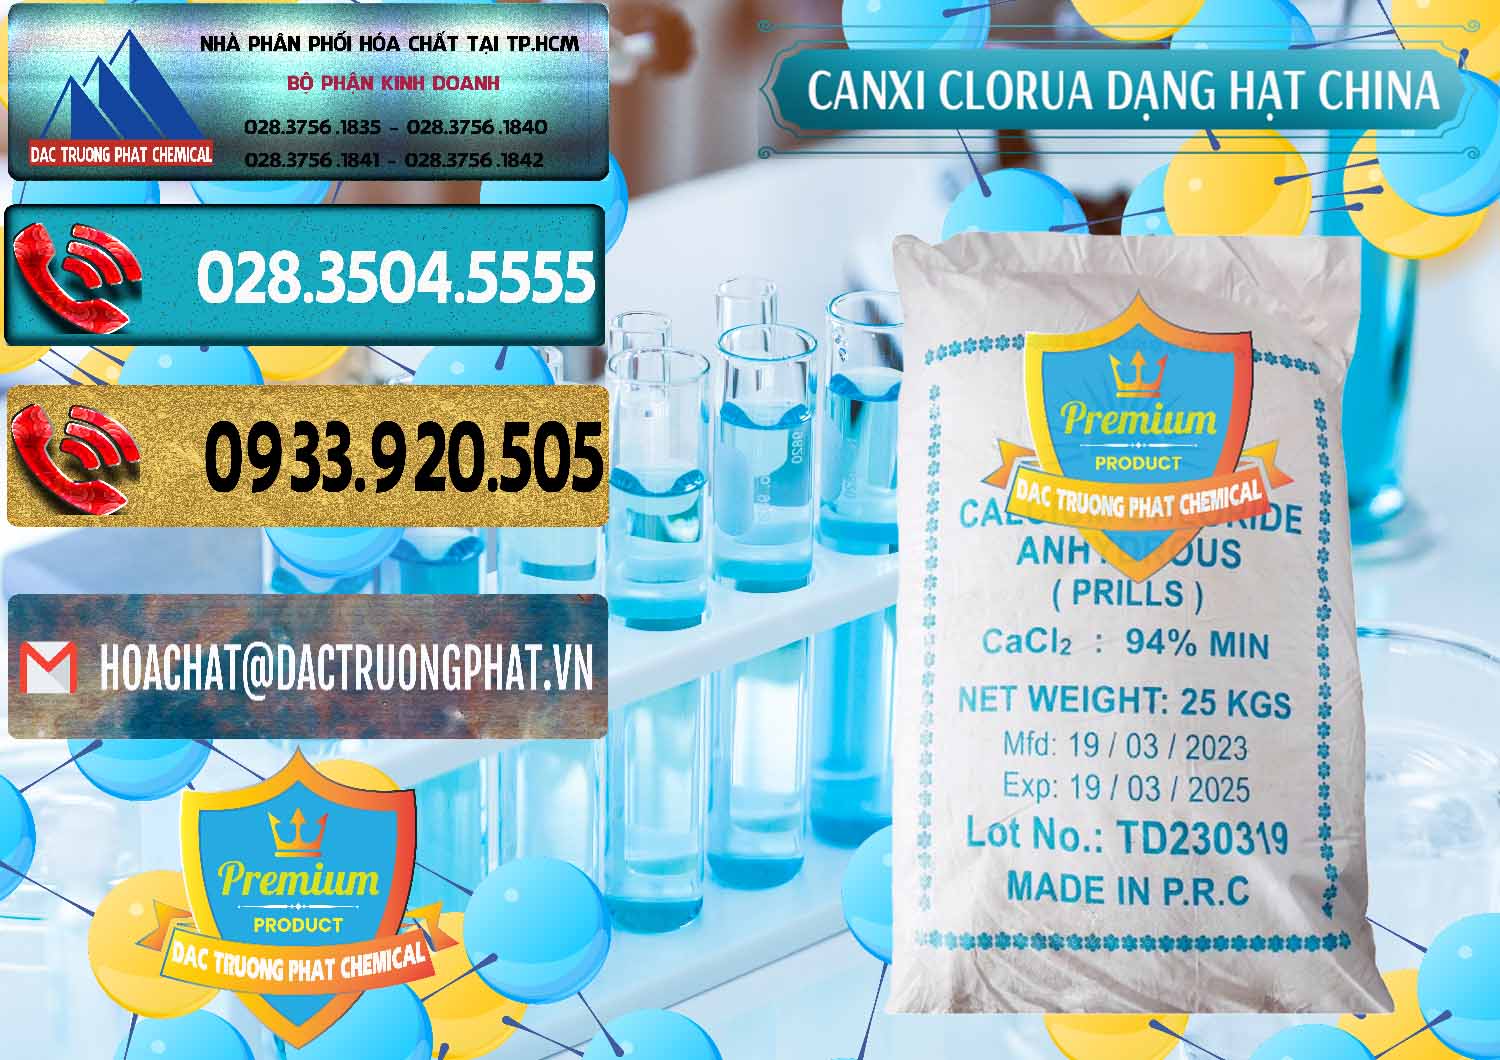 Nơi bán CaCl2 – Canxi Clorua 94% Dạng Hạt Trung Quốc China - 0373 - Cty chuyên bán - cung cấp hóa chất tại TP.HCM - hoachatdetnhuom.com